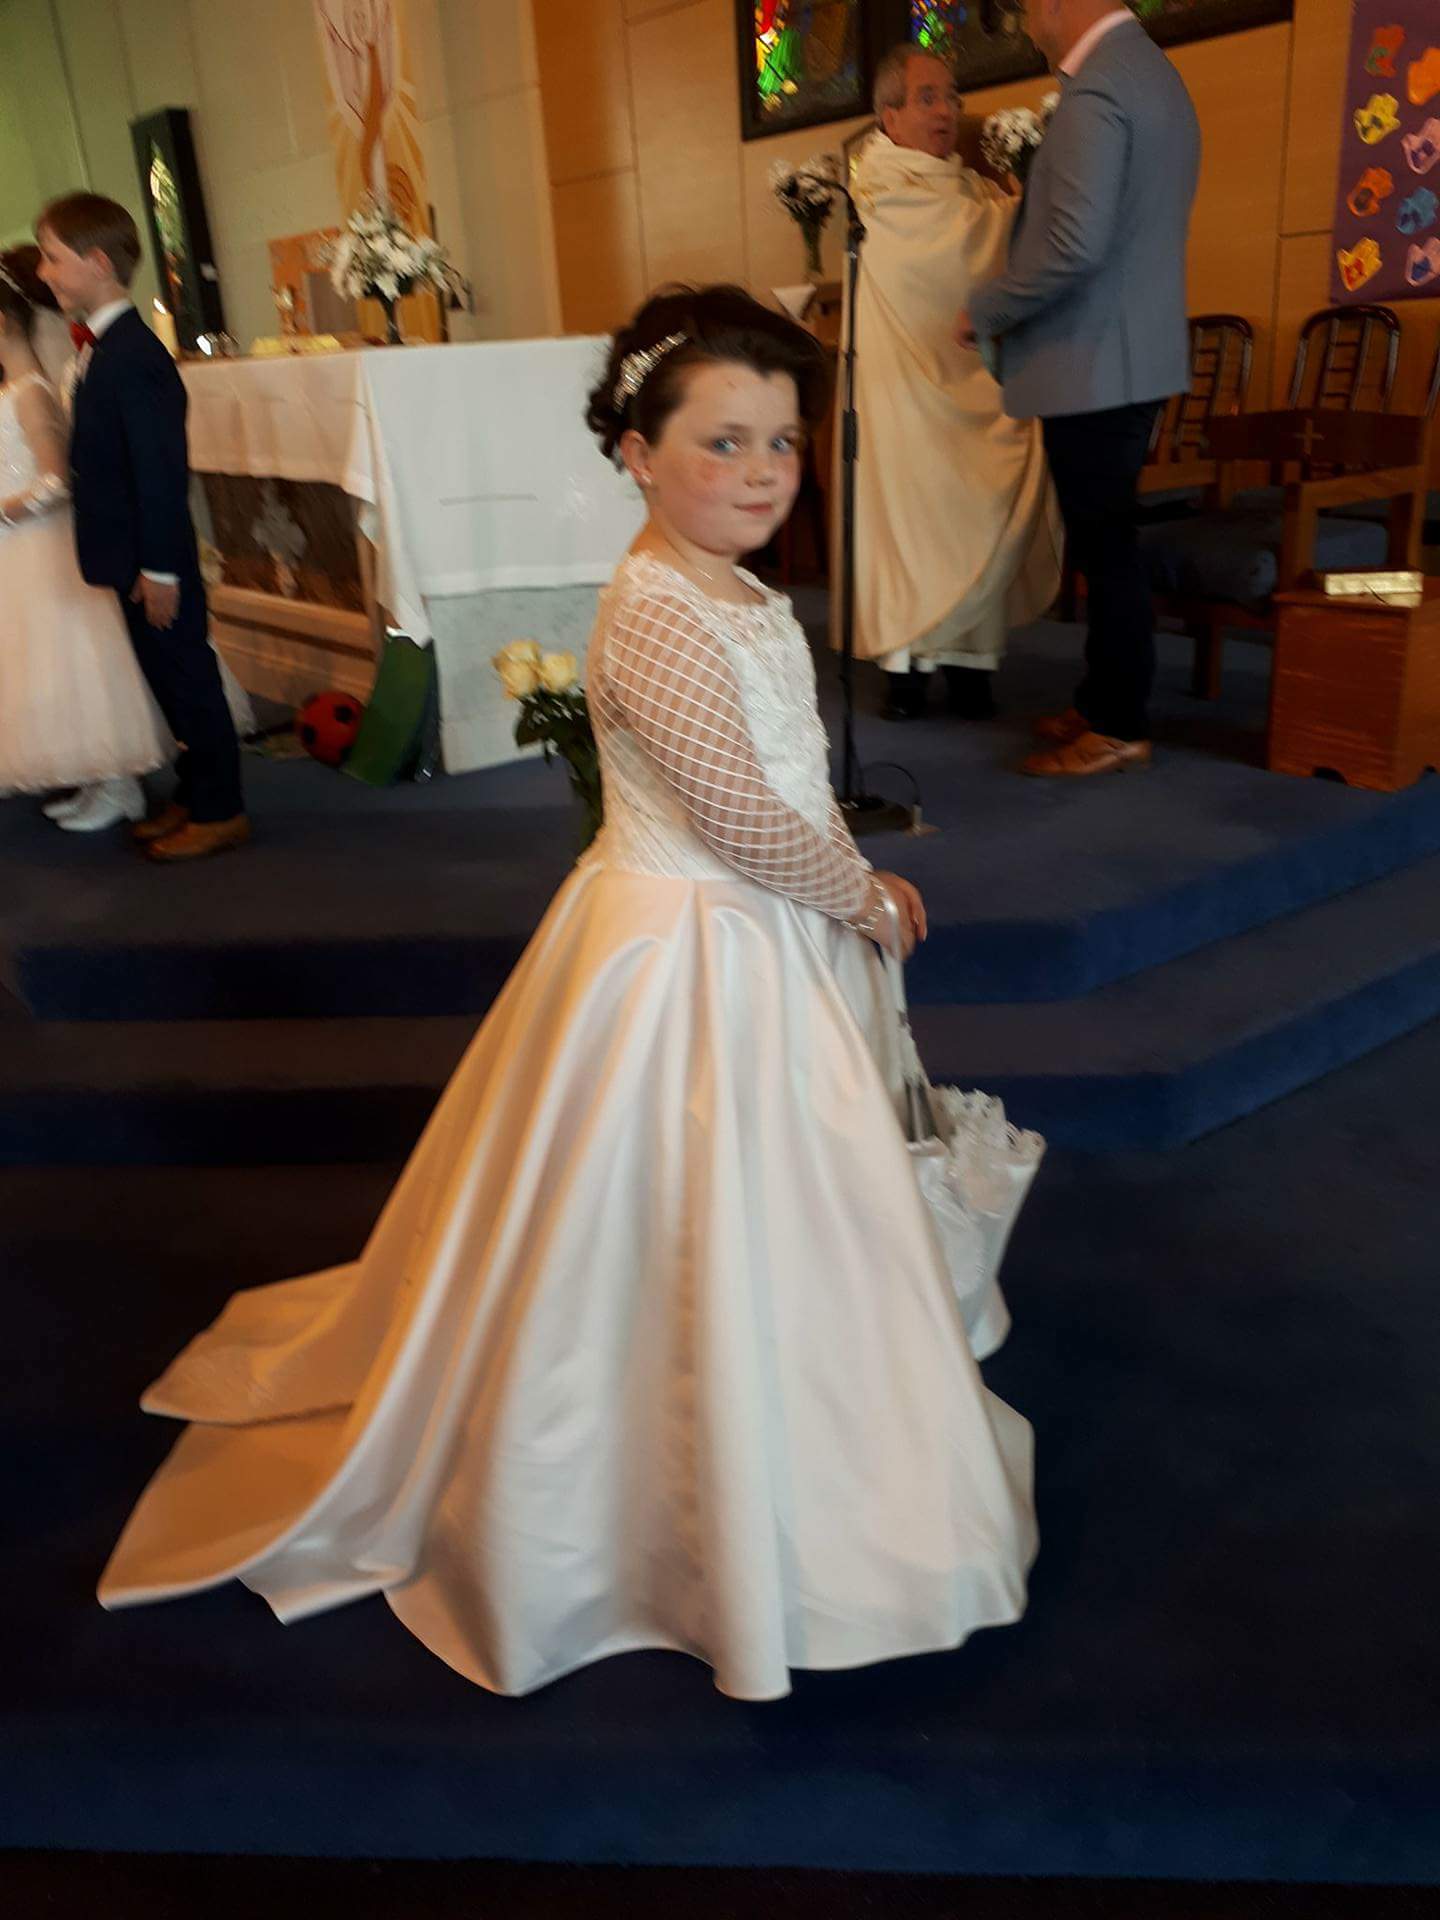 Brooke O'Neill communion dress by KoKo Collections - My Princess 1